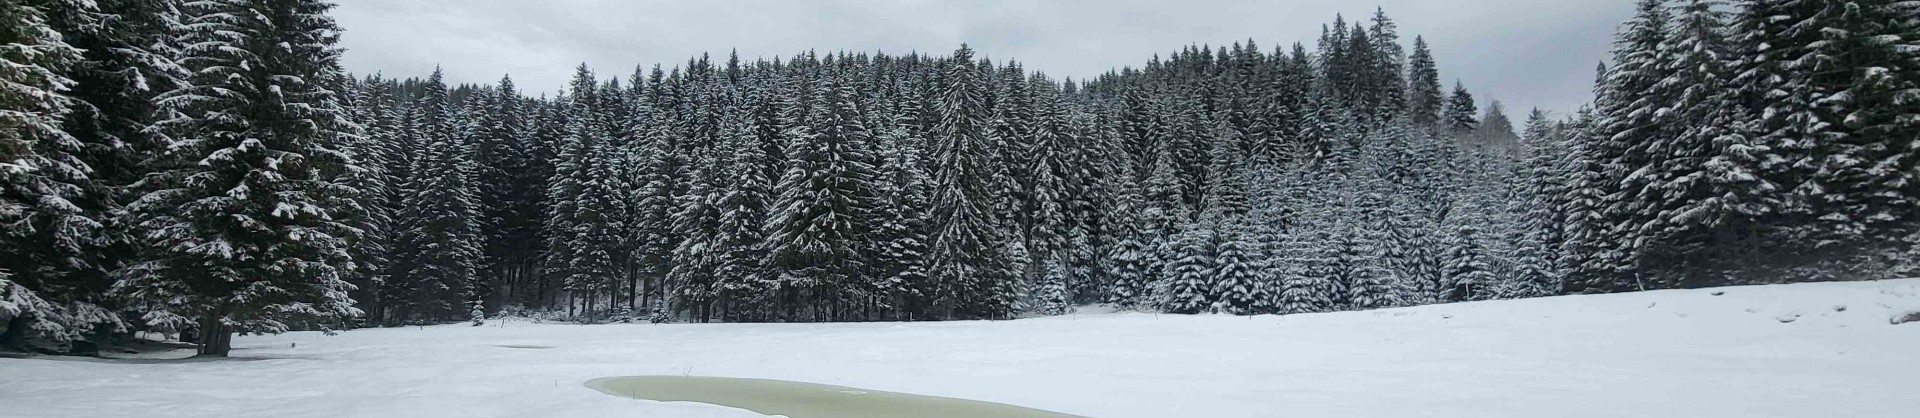 Belska planina pokljuka jezera slovenije slovenska jezera moja jezera manca korelc 2 sl